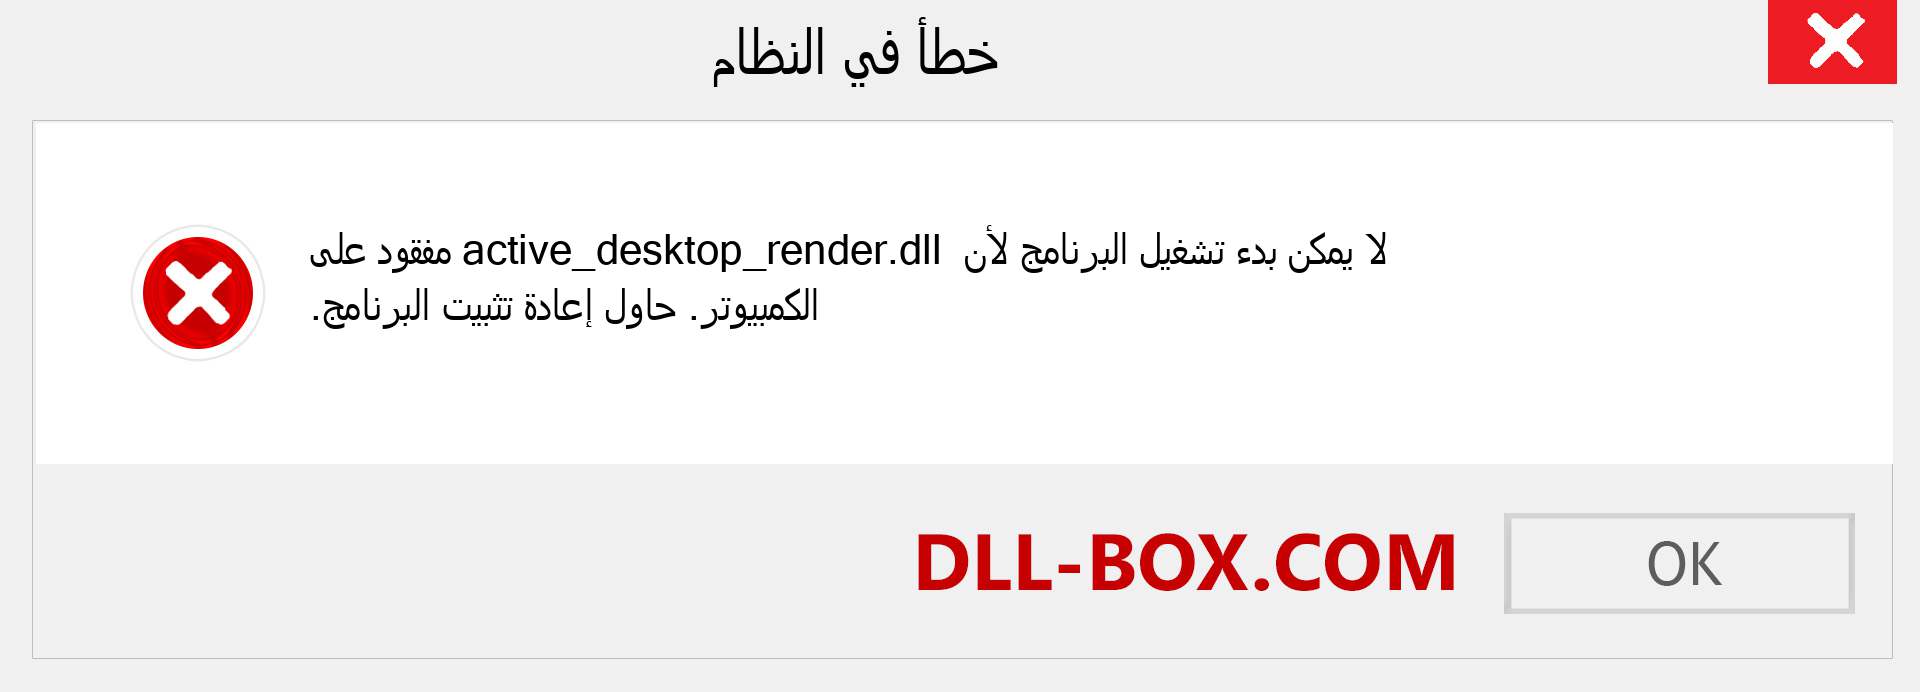 ملف active_desktop_render.dll مفقود ؟. التنزيل لنظام التشغيل Windows 7 و 8 و 10 - إصلاح خطأ active_desktop_render dll المفقود على Windows والصور والصور